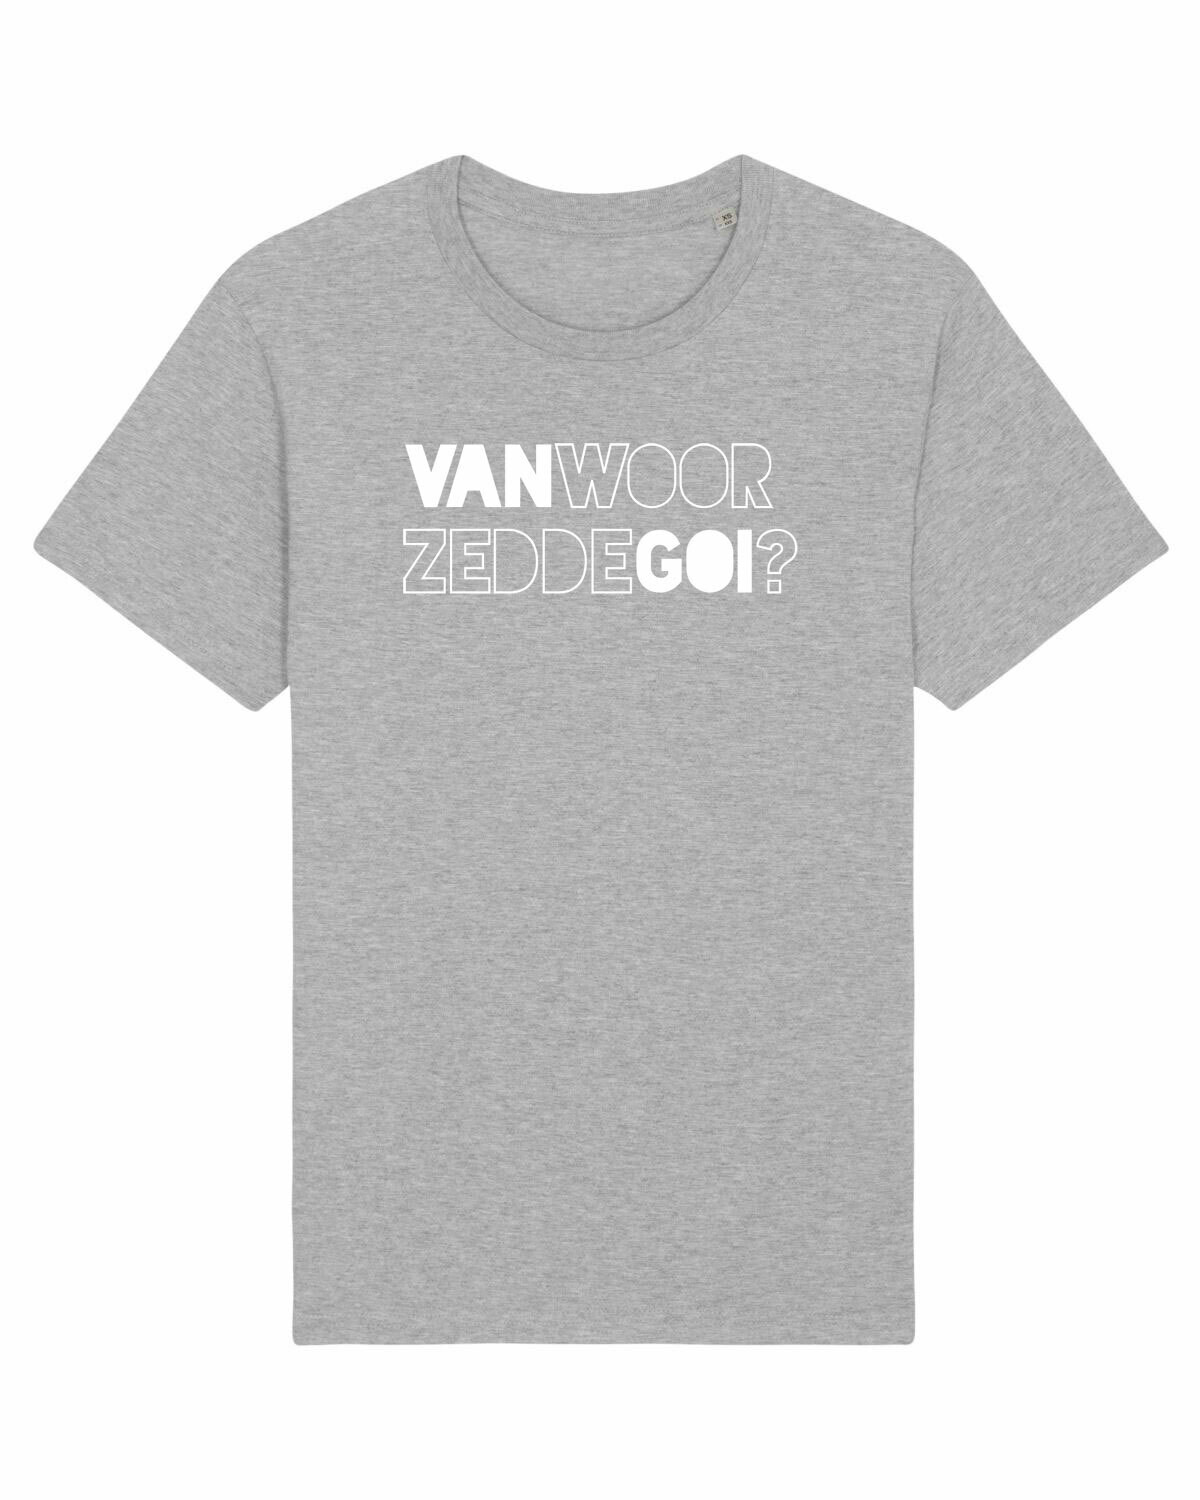 T-shirt Van Woor Zedde Goi?